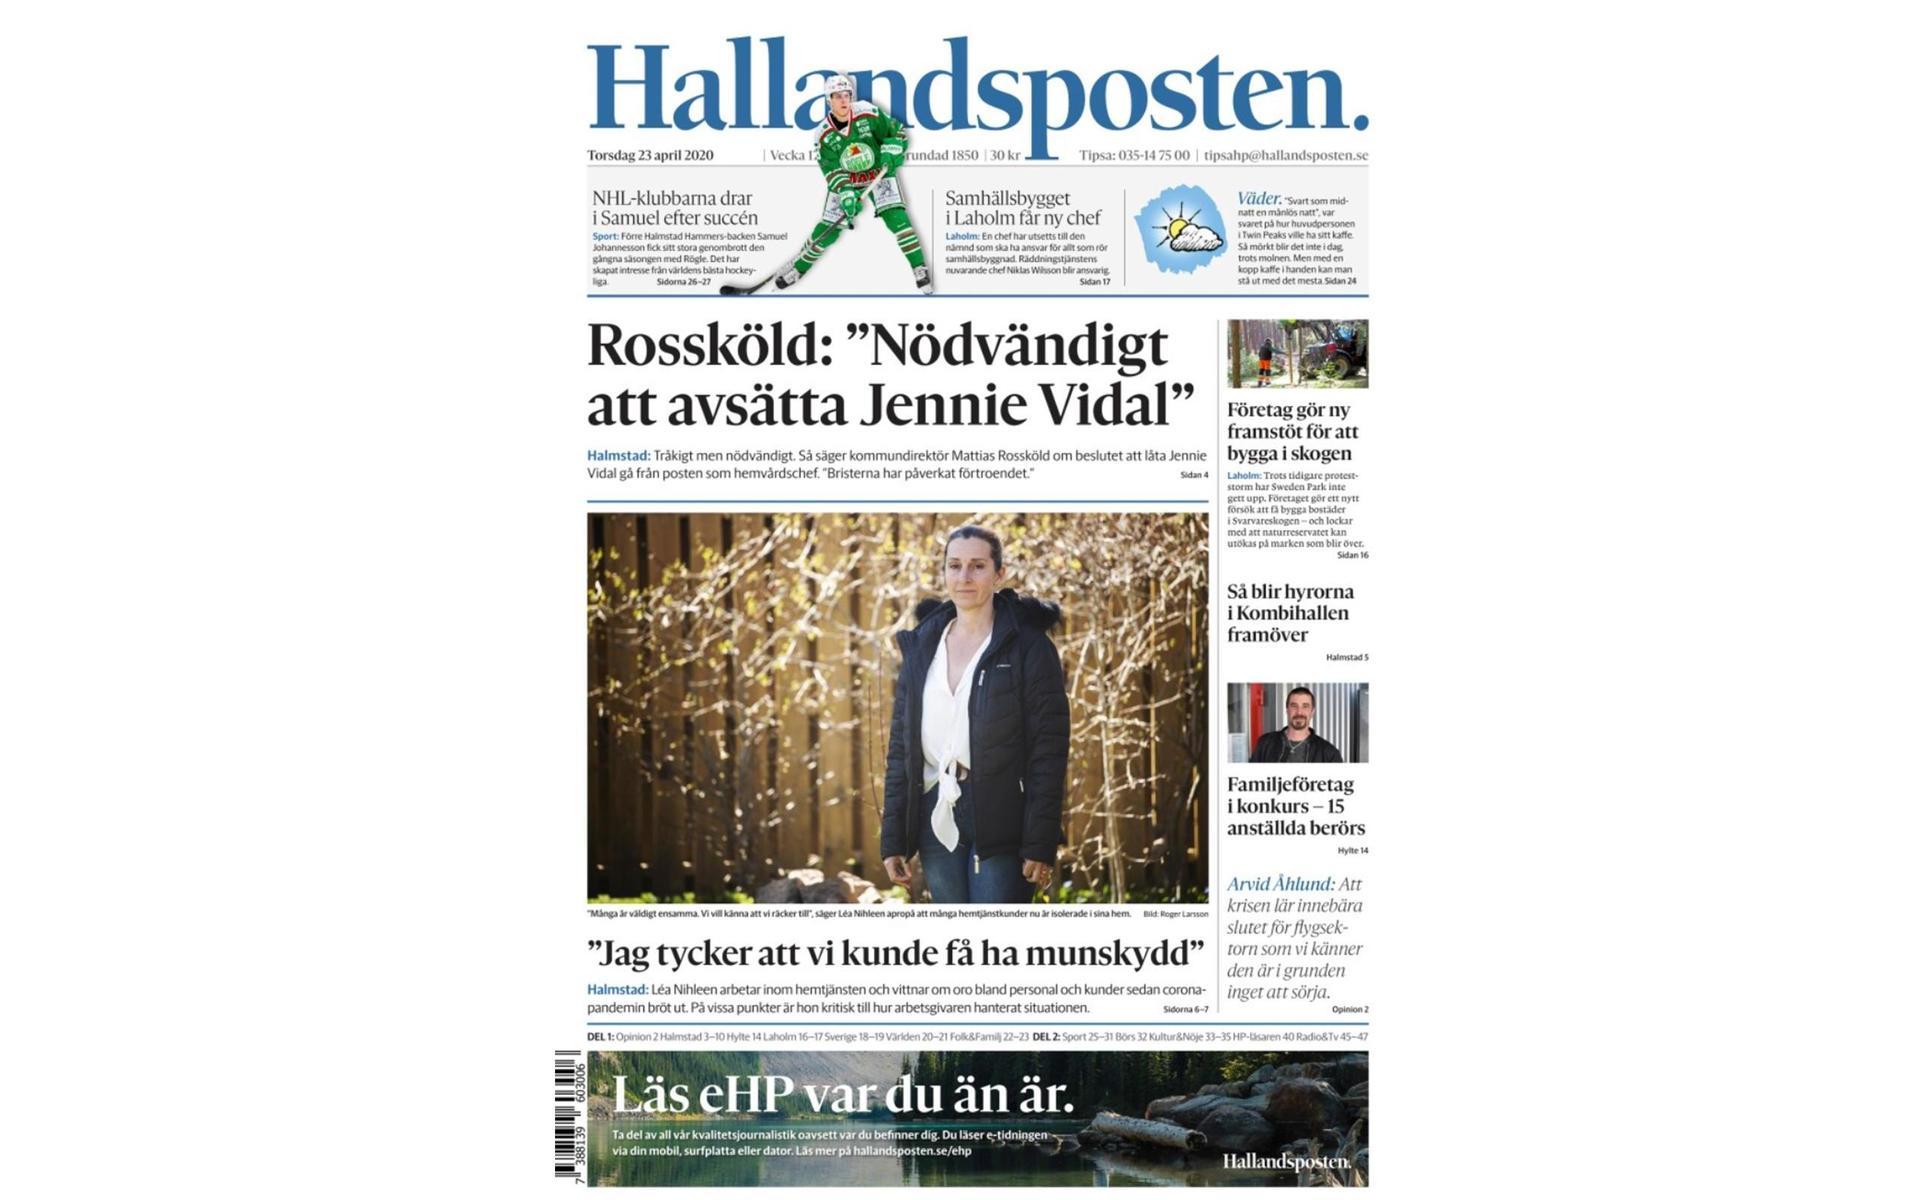 Den 23 april 2020 var en av rubrikerna på förstasidan att kommundirektören Mattias Rossköld tyckte att det var ”nödvändigt att avsätta Jennie Vidal”. Nyheten kring avsättningen var en av de mest omdiskuterade händelserna under fjolåret. I december 2020 besökte HP Jennie Vidal på hennes nya jobb i Ljungby. En länk till det reportaget finns i texten nedan. 